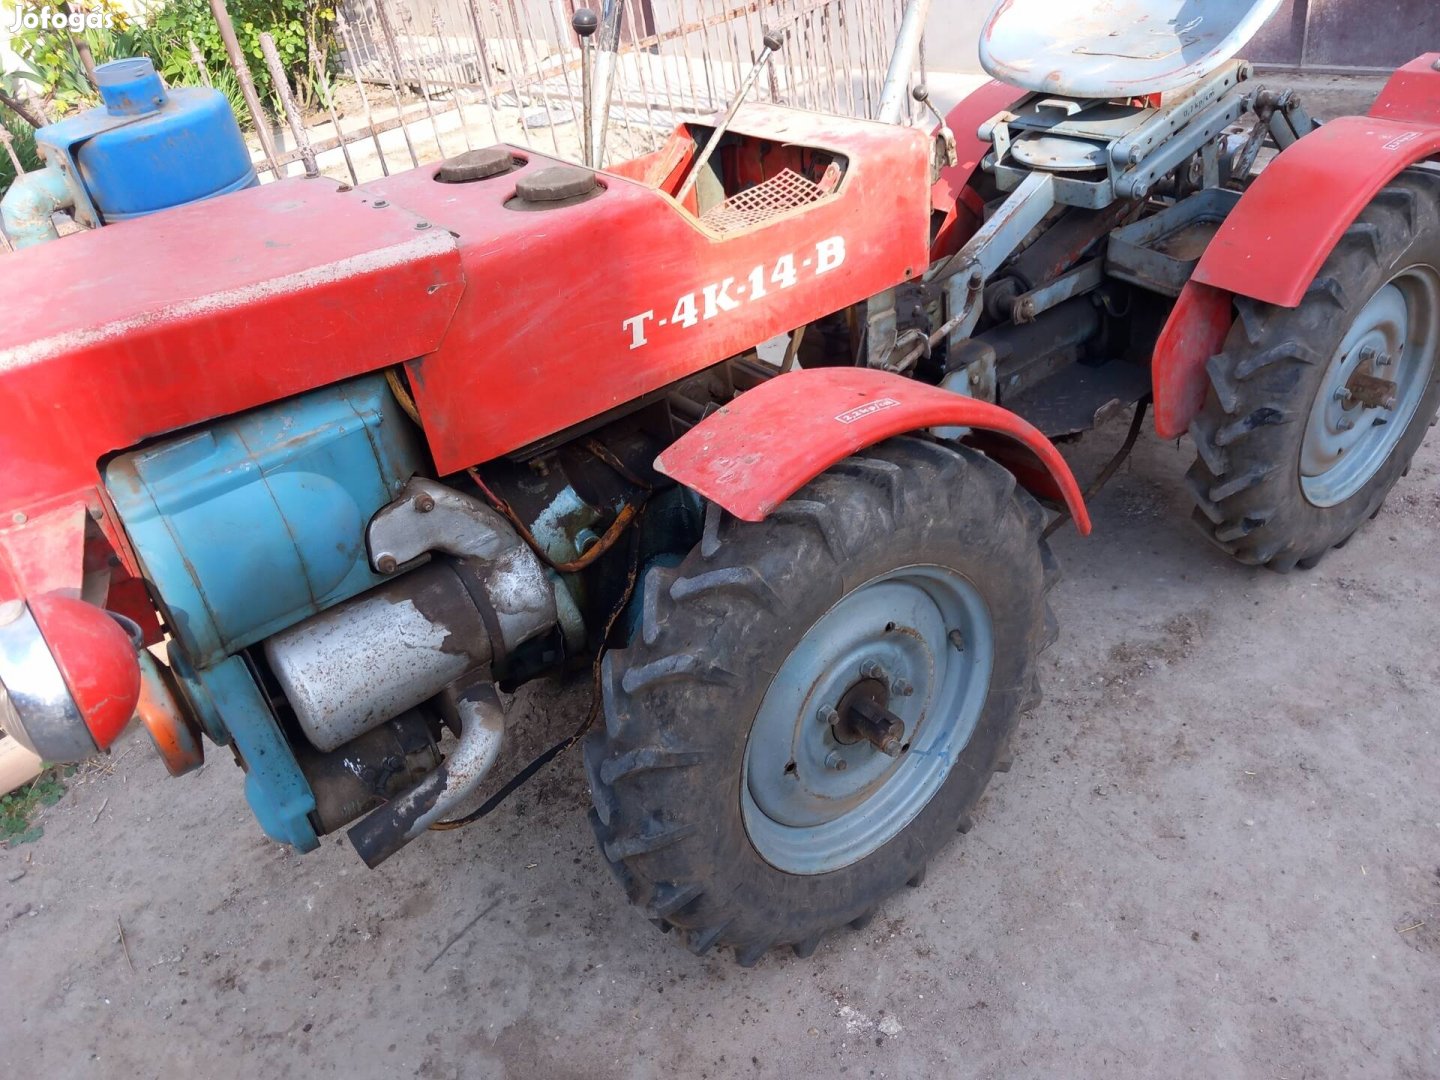 Keresek: Kerti traktor tz4k Mt8 mezőgazdasági gép jármű 